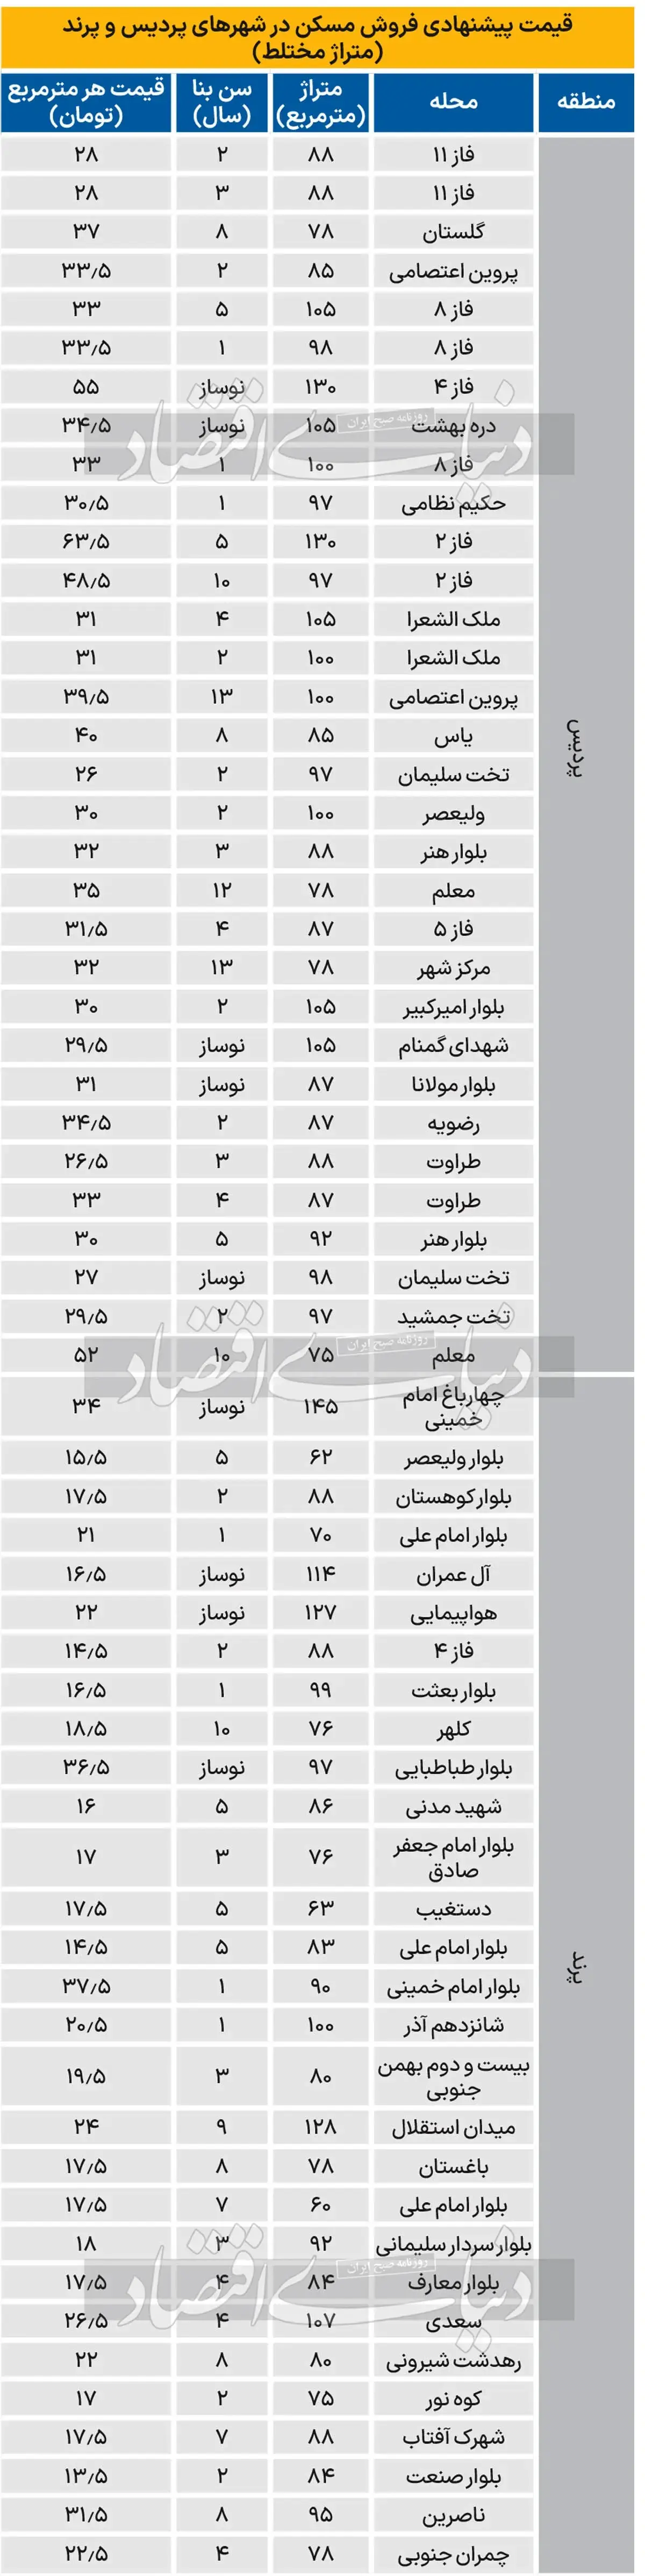 تفاوت عجیب قیمت مسکن در تهران و پرند! + جدول 2